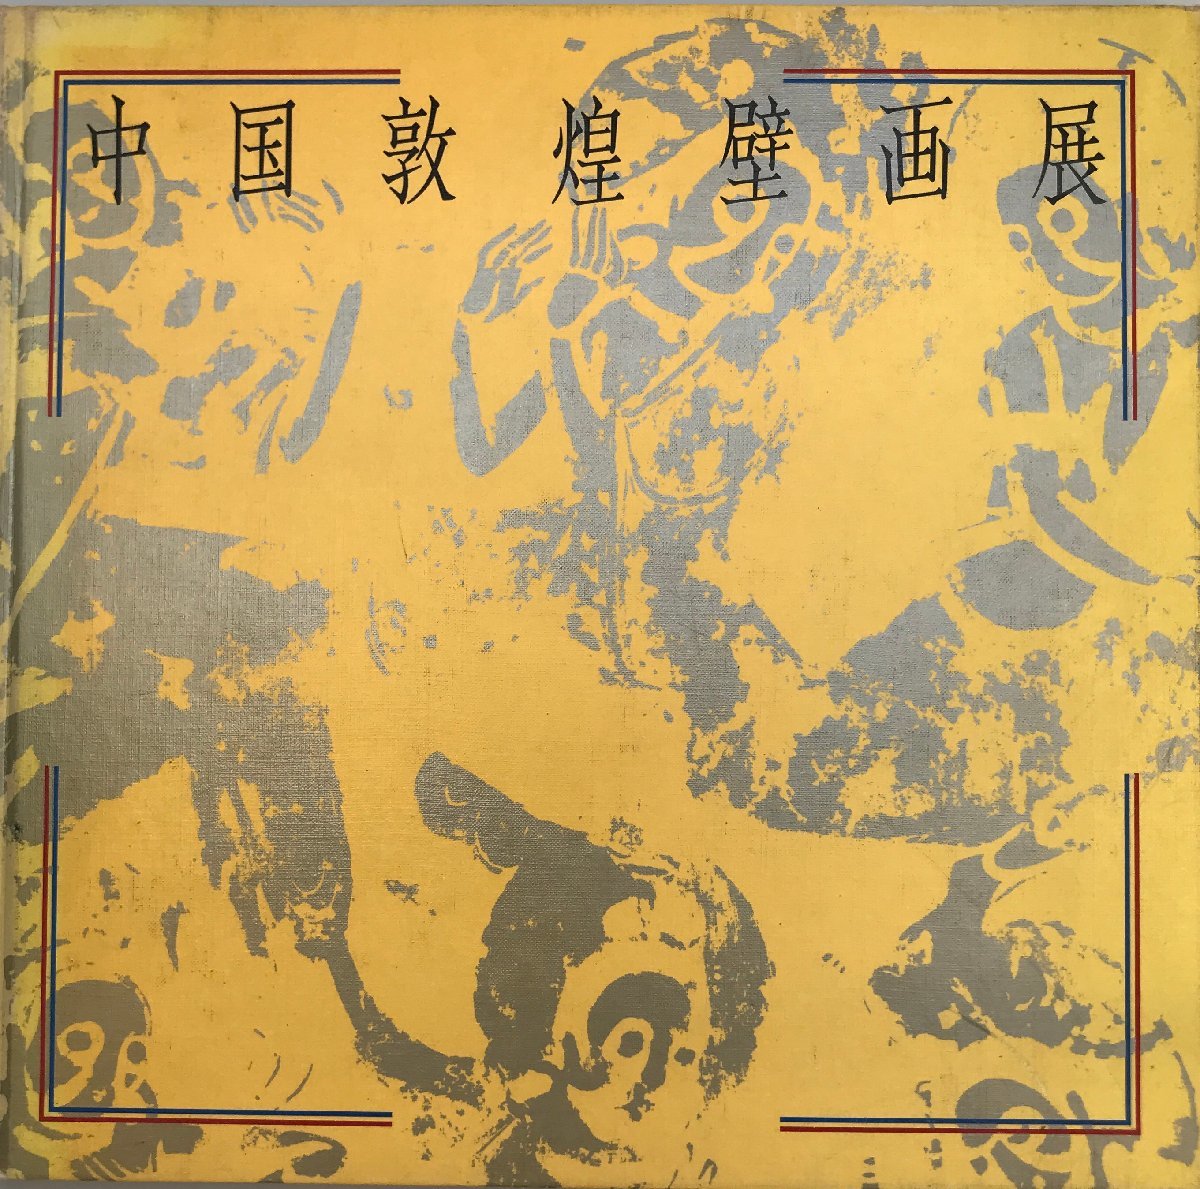 Wandmalerei-Ausstellung in Dunhuang, China, Malerei, Kunstbuch, Sammlung, Katalog